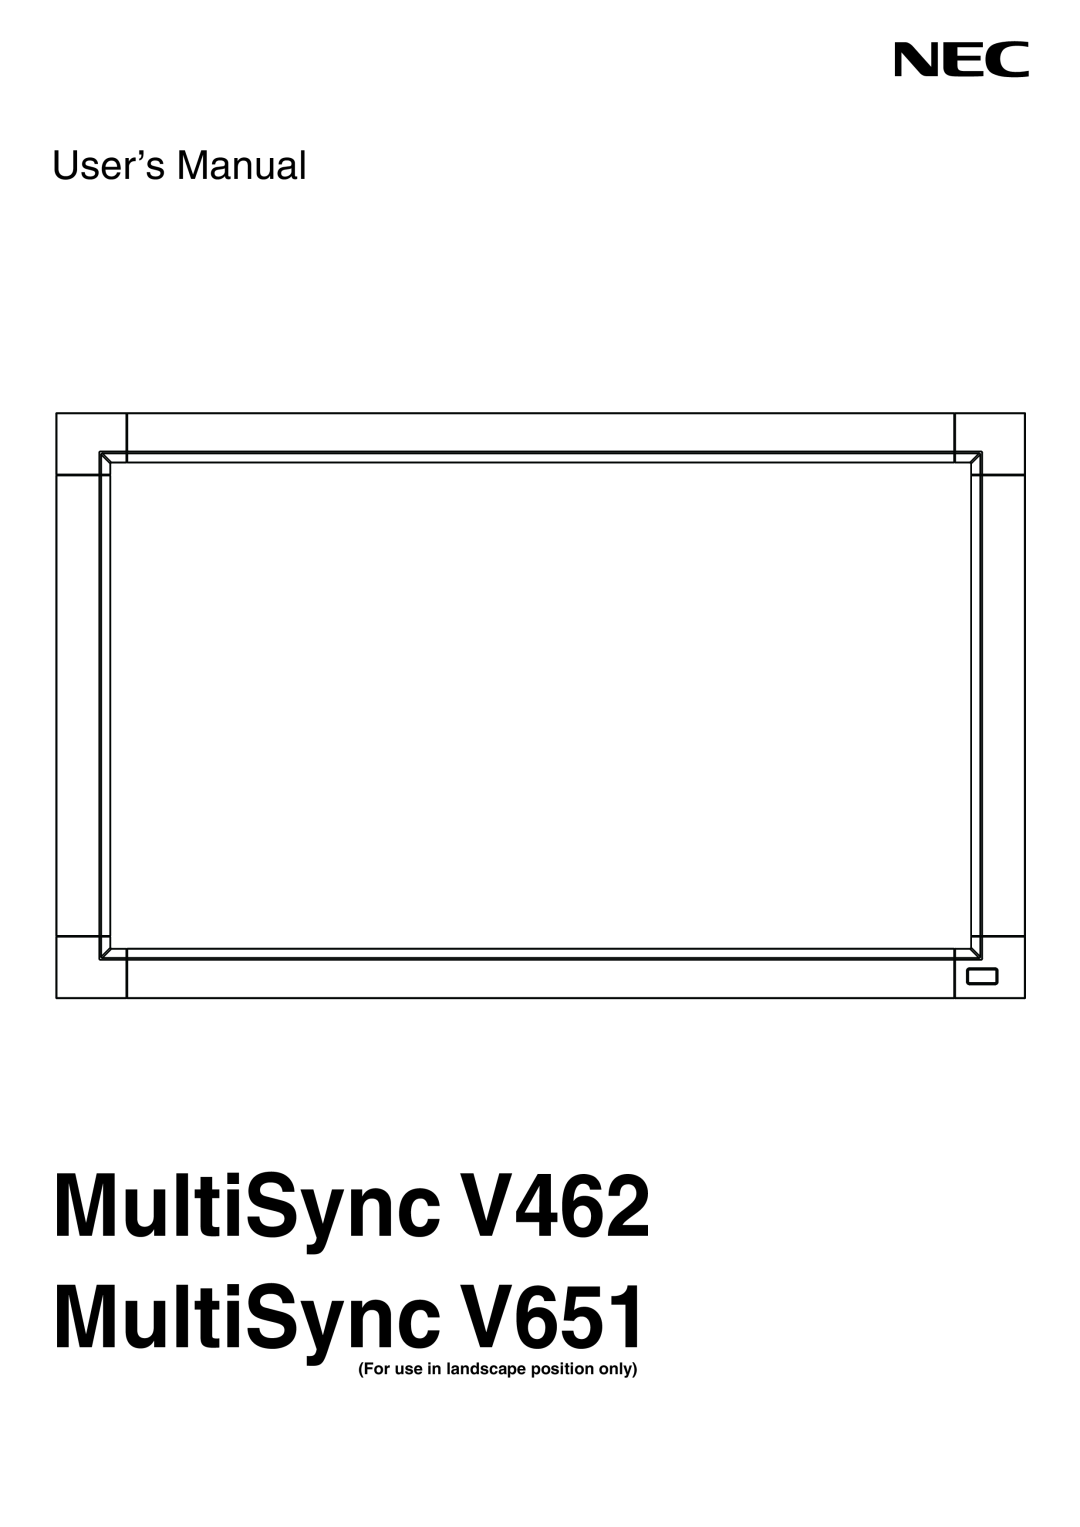 NEC V651 user manual MultiSync V462 MultiSync, User’s Manual 